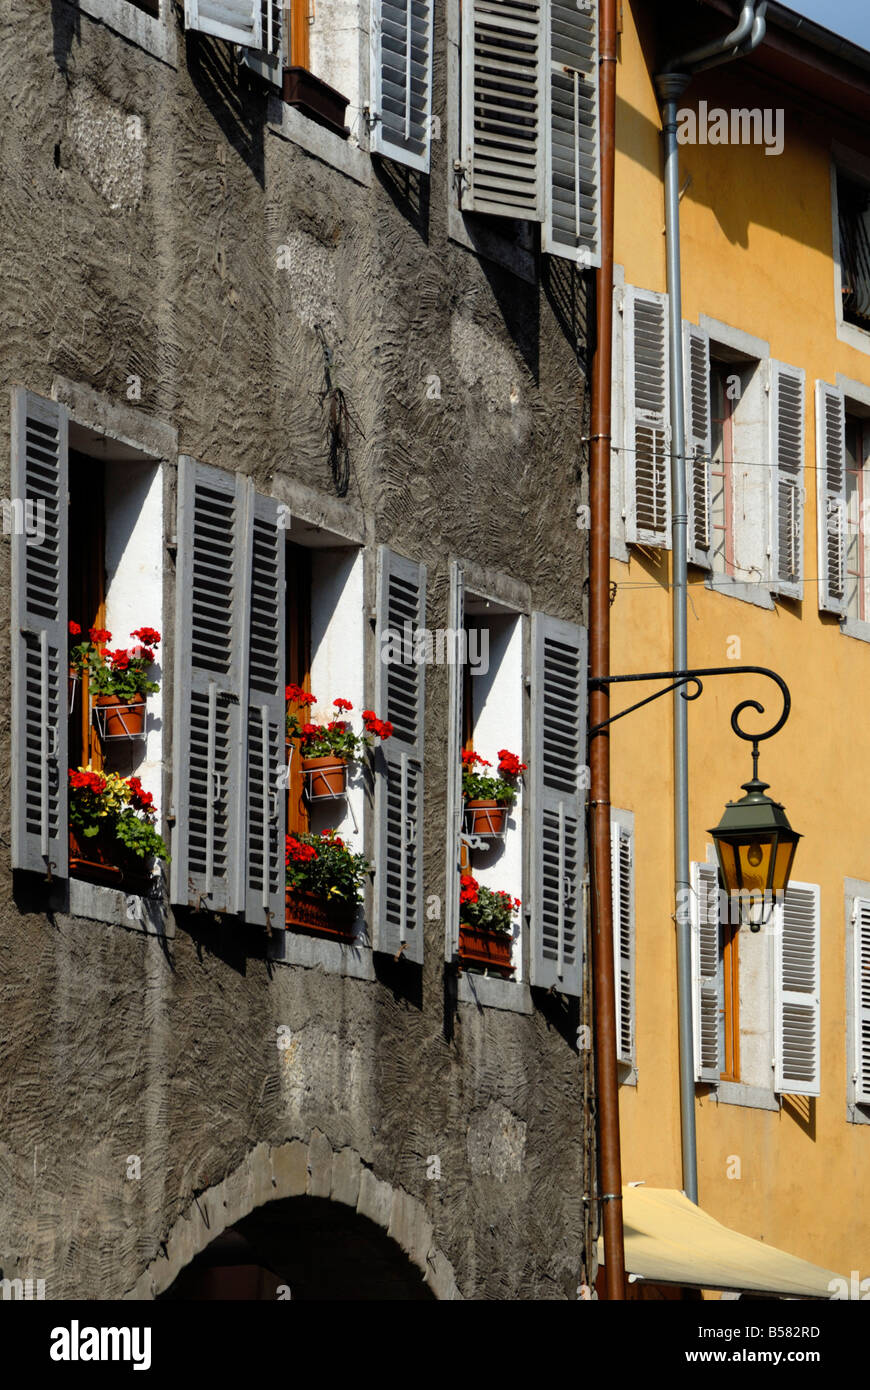 Fenêtres à volets fleurie, rue Sainte-Claire, Annecy, Rhône-Alpes, France, Europe Banque D'Images